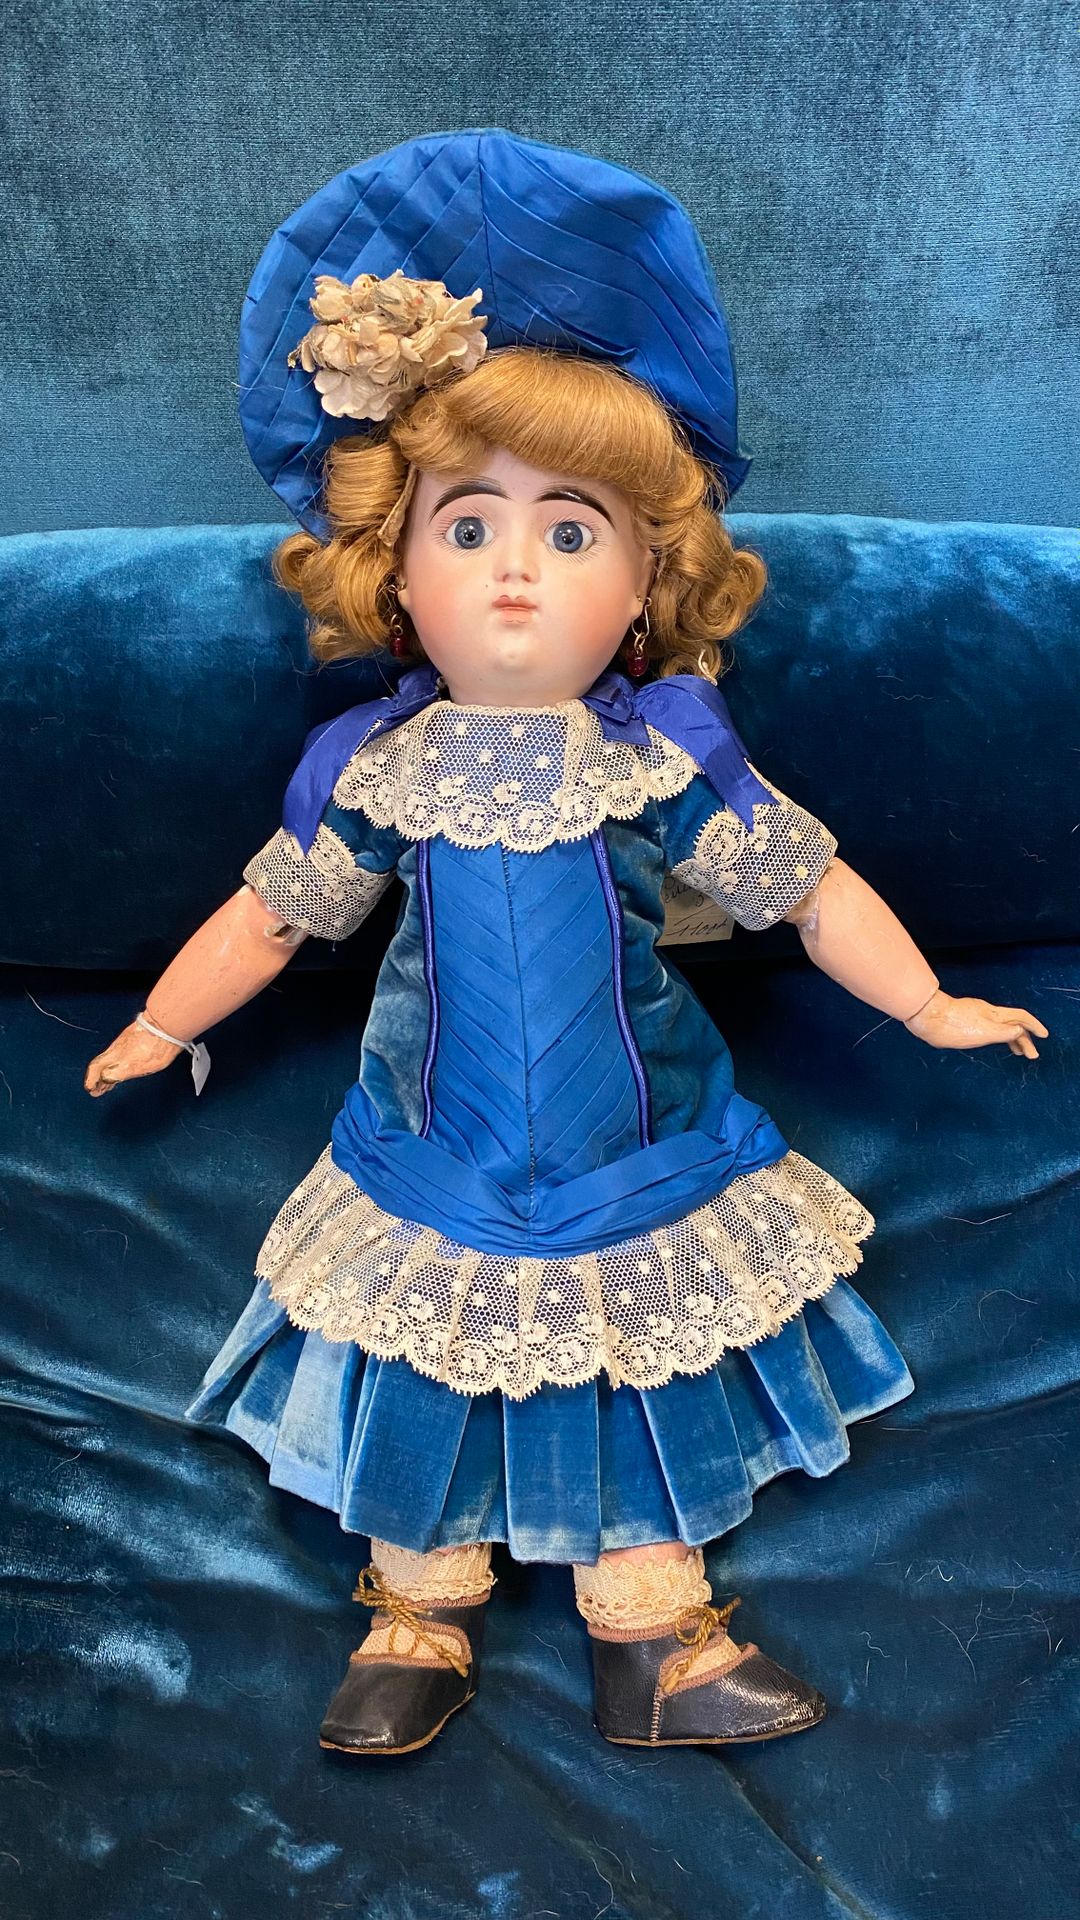 Null 法国娃娃，头部为平纹，嘴巴紧闭，蓝色眼睛固定。

JUMEAU型铰接式车身

H.40厘米

(磨损)